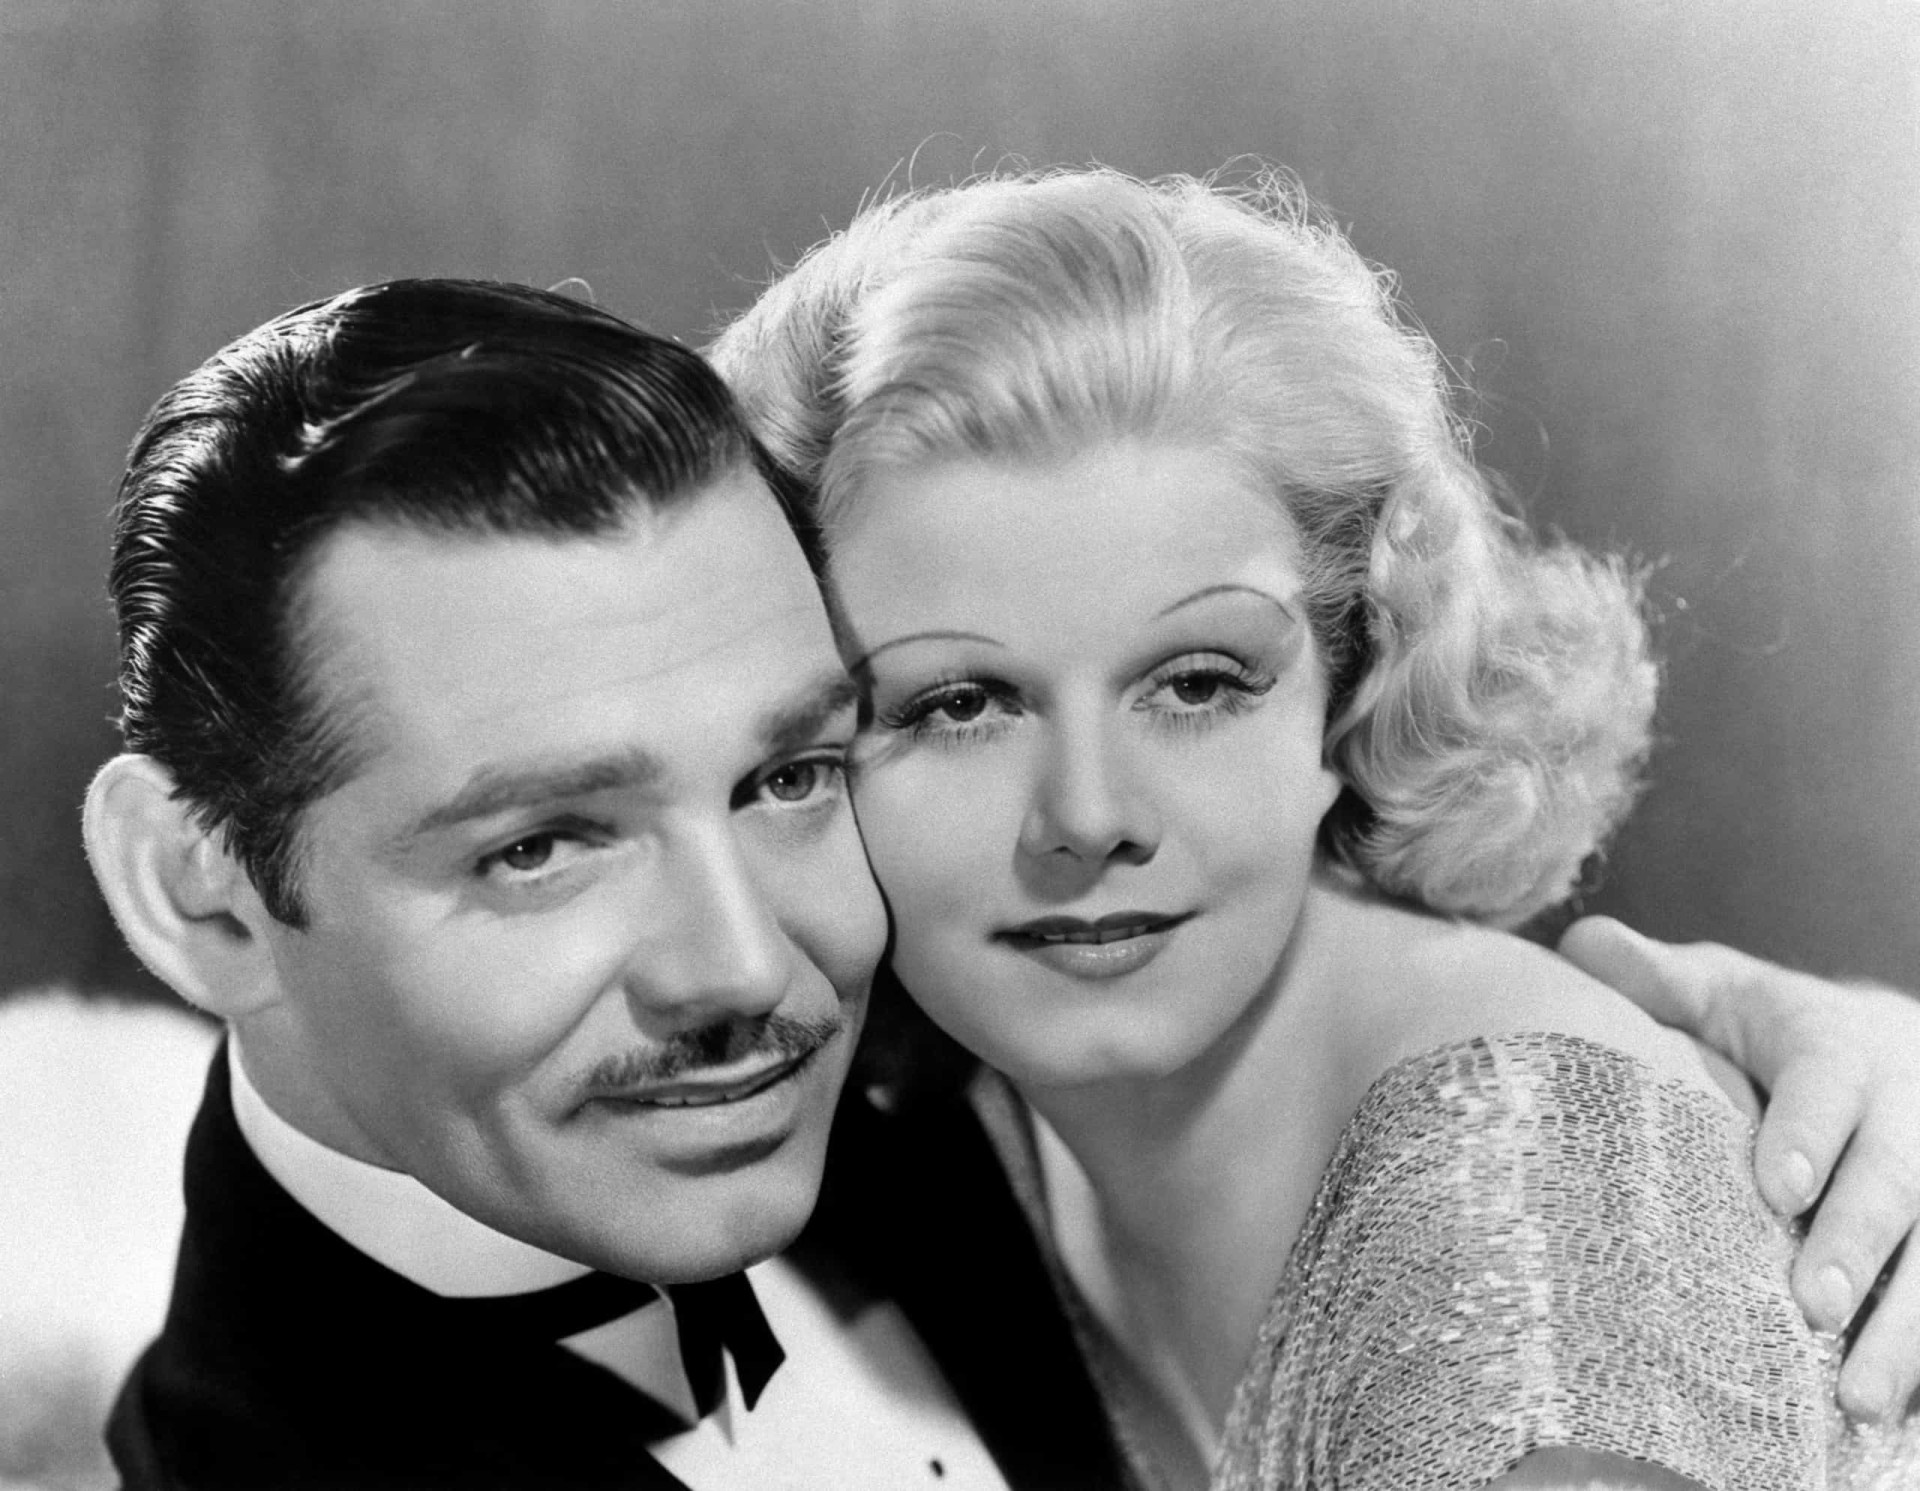 <p>Doch der Star starb 1937 im Alter von nur 26 Jahren vorzeitig an akutem Nierenversagen. Zu dieser Zeit war sie mitten in den Dreharbeiten zu dem Film "Saratoga" mit Clark Gable. Gable, der sie an ihrem Krankenbett besuchte, soll gesagt haben, als er sich zu ihr beugte, um sie zu begrüßen, "war es, als würde man eine tote Person küssen, eine verrottende Person."</p><p>Sie können auch mögen:<a href="https://de.starsinsider.com/n/190725?utm_source=msn.com&utm_medium=display&utm_campaign=referral_description&utm_content=487809v1"> Dieser Song war auf Platz eins in den Charts als Sie geboren wurden</a></p>